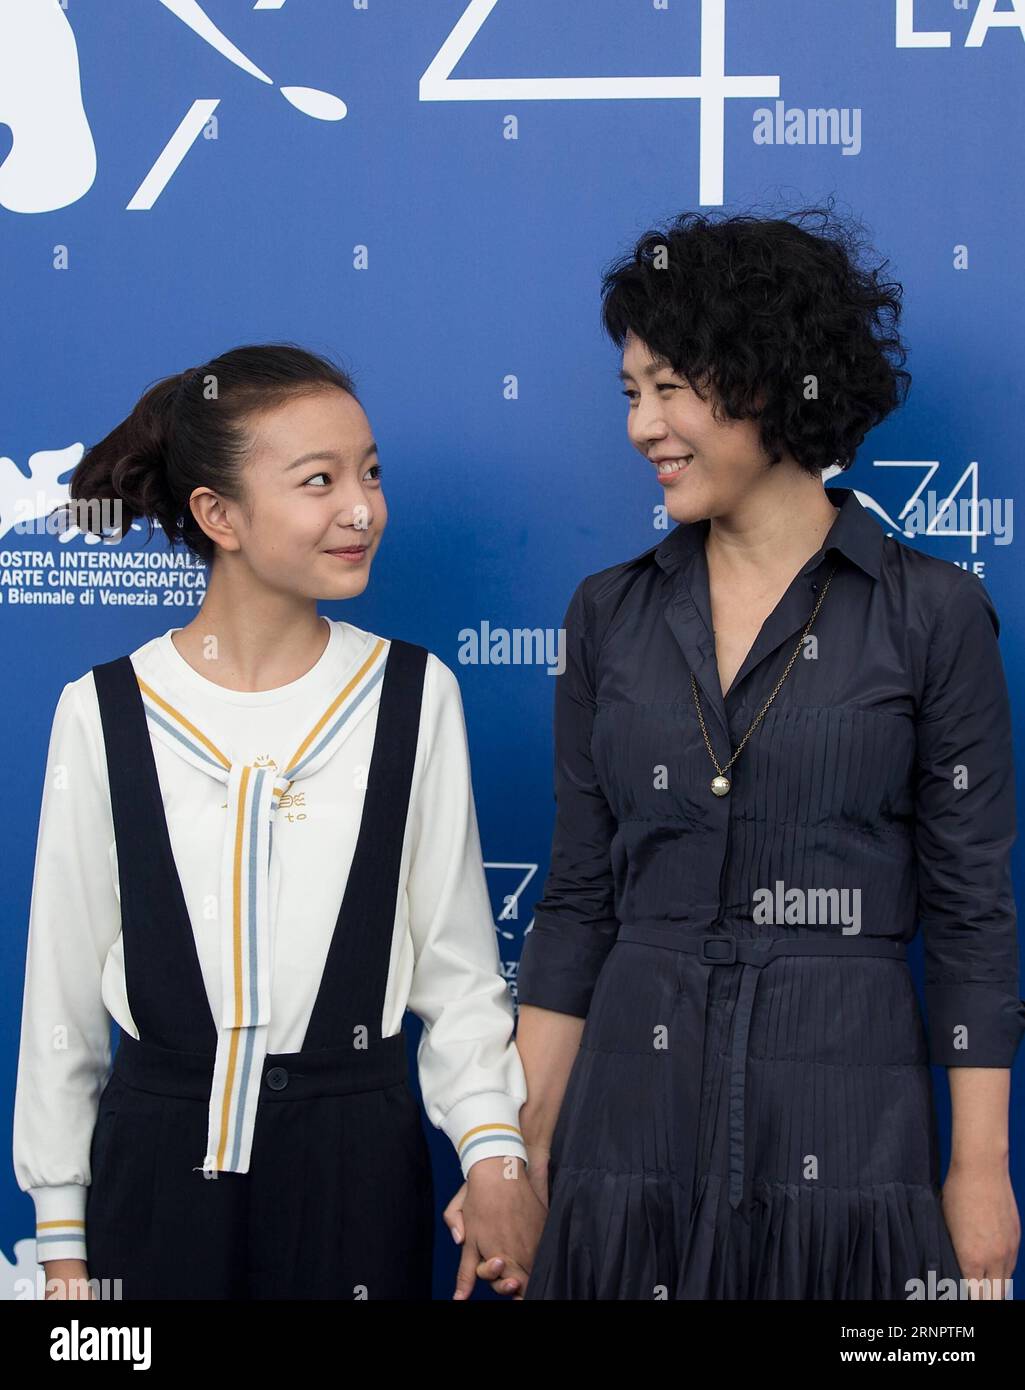 (170907) -- VENEDIG, 7. September 2017 -- Regisseurin Vivian Qu (R) und Schauspielerin Zhou Meijun posieren während eines Fotogesprächs für den Film Engel tragen weiß beim 74. Filmfestival in Venedig, Italien, 7. September 2017. ) (hy) ITALIEN-VENEDIG-FILM FESTIVAL-ENGEL TRÄGT WEISS-FOTOAUFRUF JinxYu PUBLICATIONxNOTxINxCHN Stockfoto